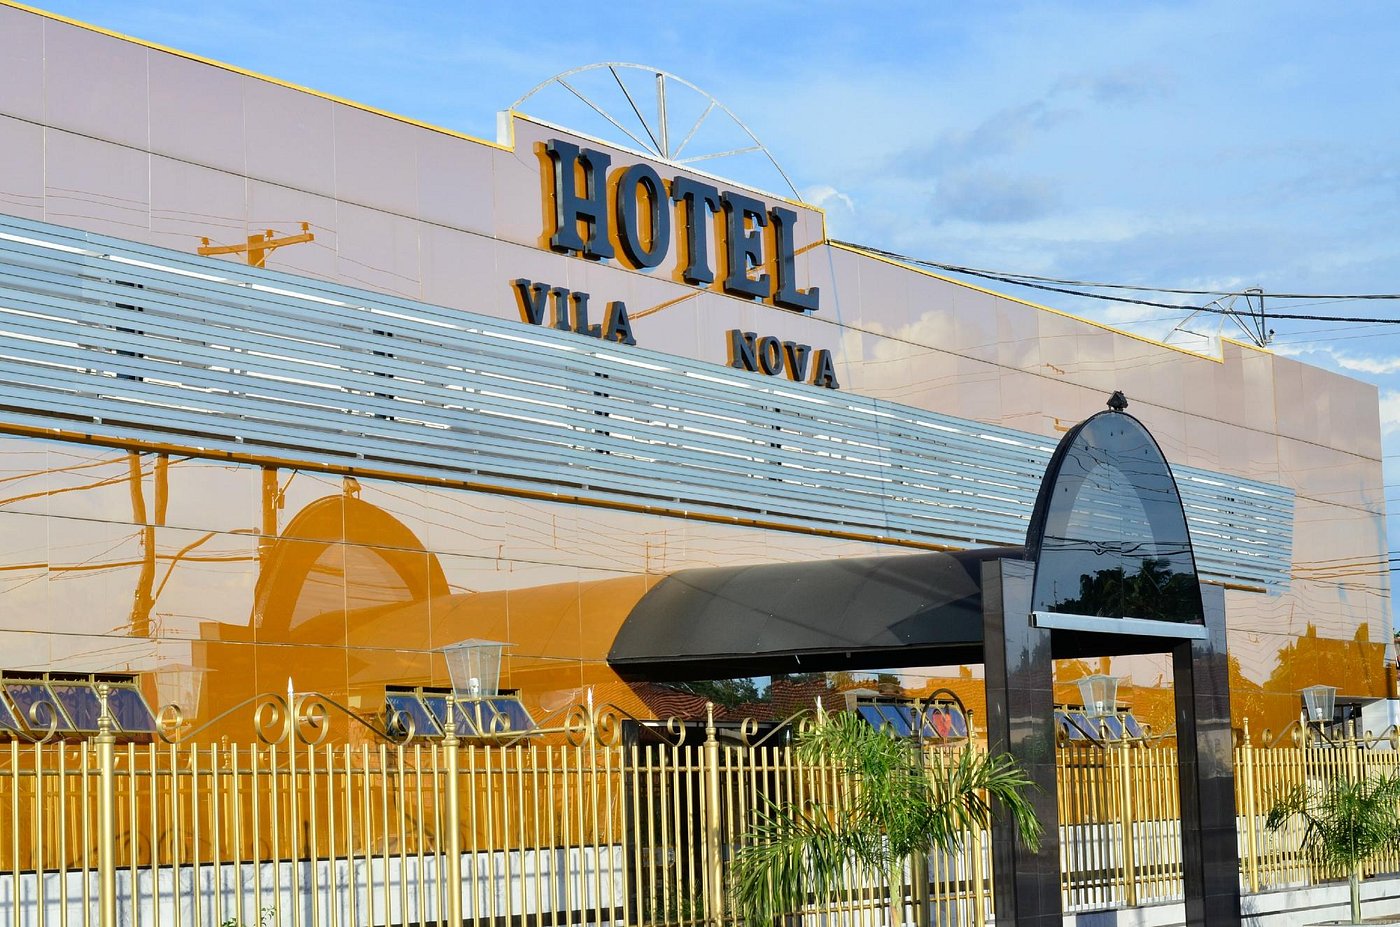 Hotel Vila Nova CosmÓpolis 11 Fotos E 9 Avaliações Tripadvisor 9847